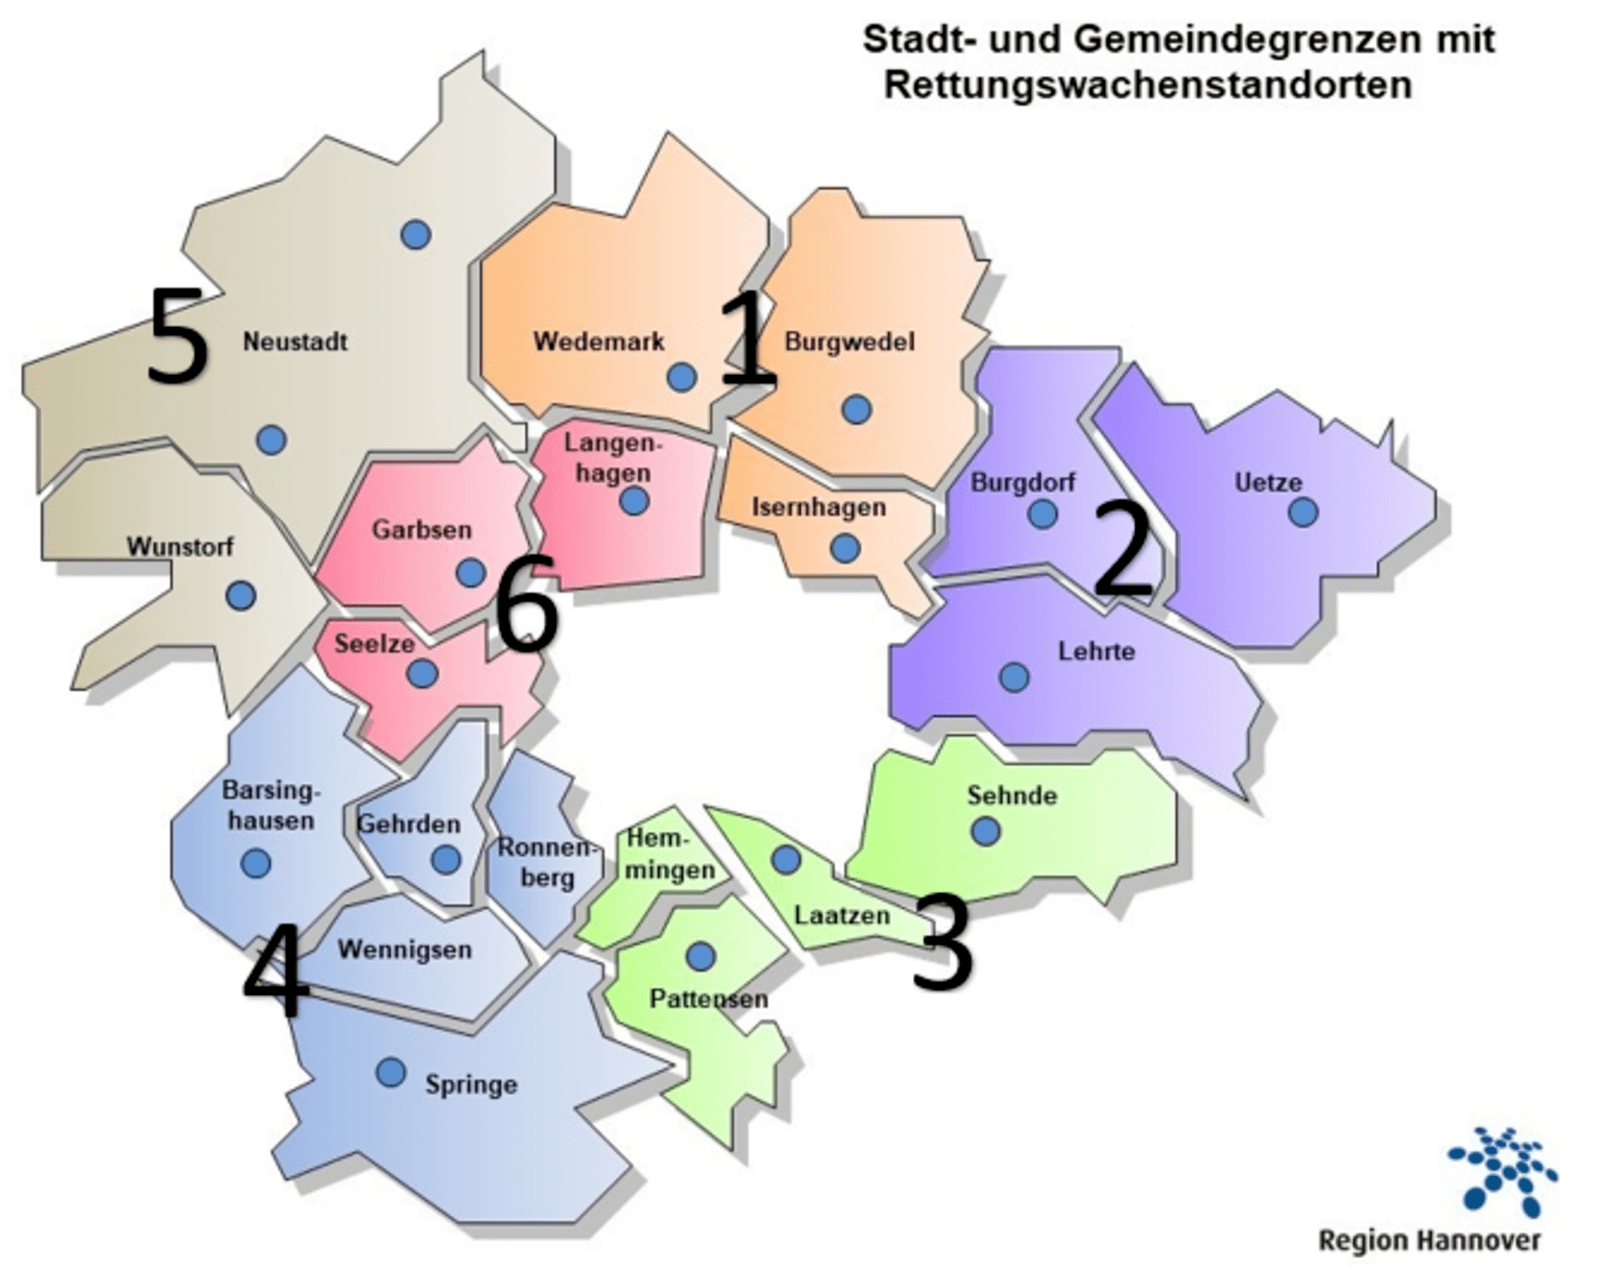 Karte der Region Hannover mit farbigen Unterteilungen